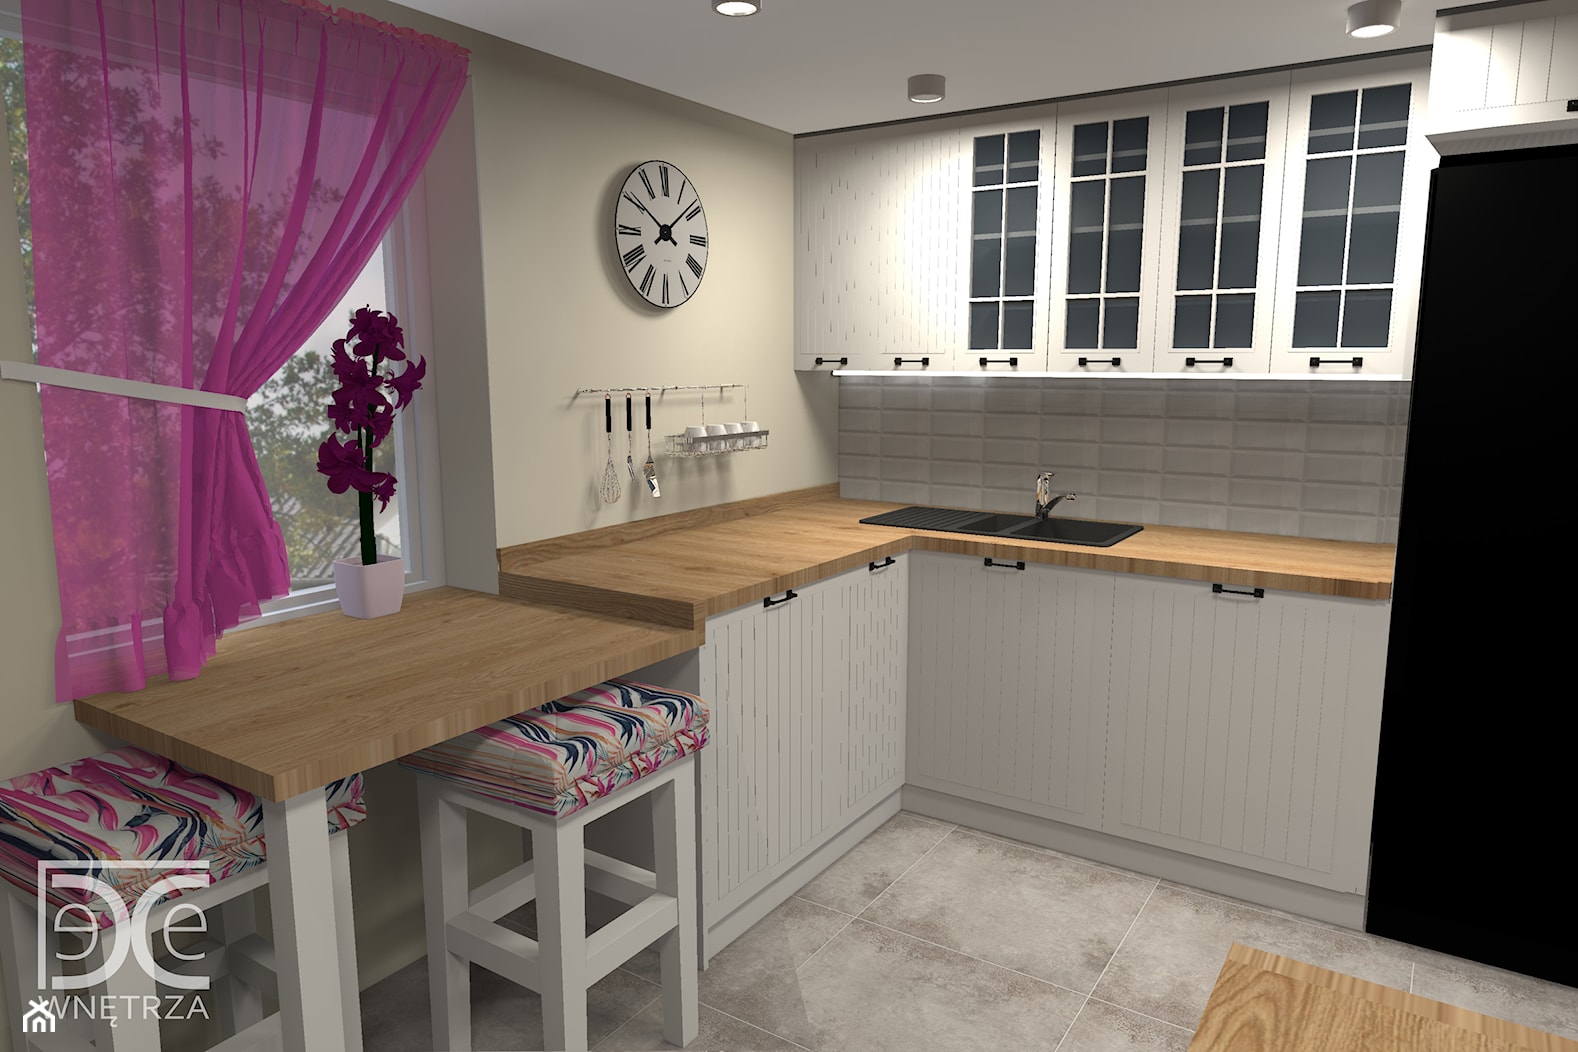 Salon z kuchnią w stylu retro/rustykalnym - projekt i realizacja - zdjęcie od DeCe Wnętrza - Dominika Ciuberek - Homebook